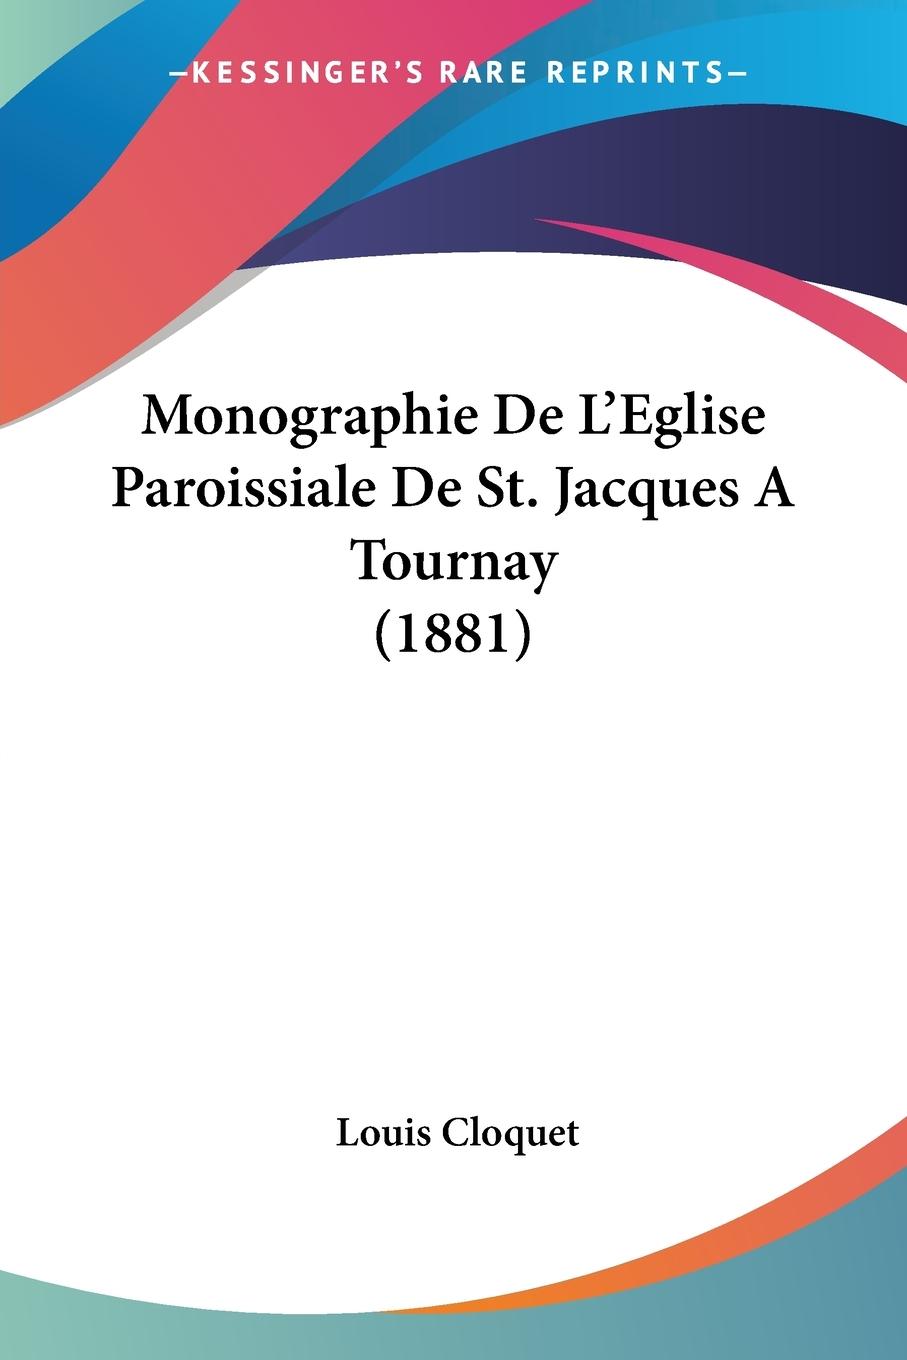 Monographie De L Eglise Paroissiale De St. Jacques A Tournay (1881) - Cloquet, Louis